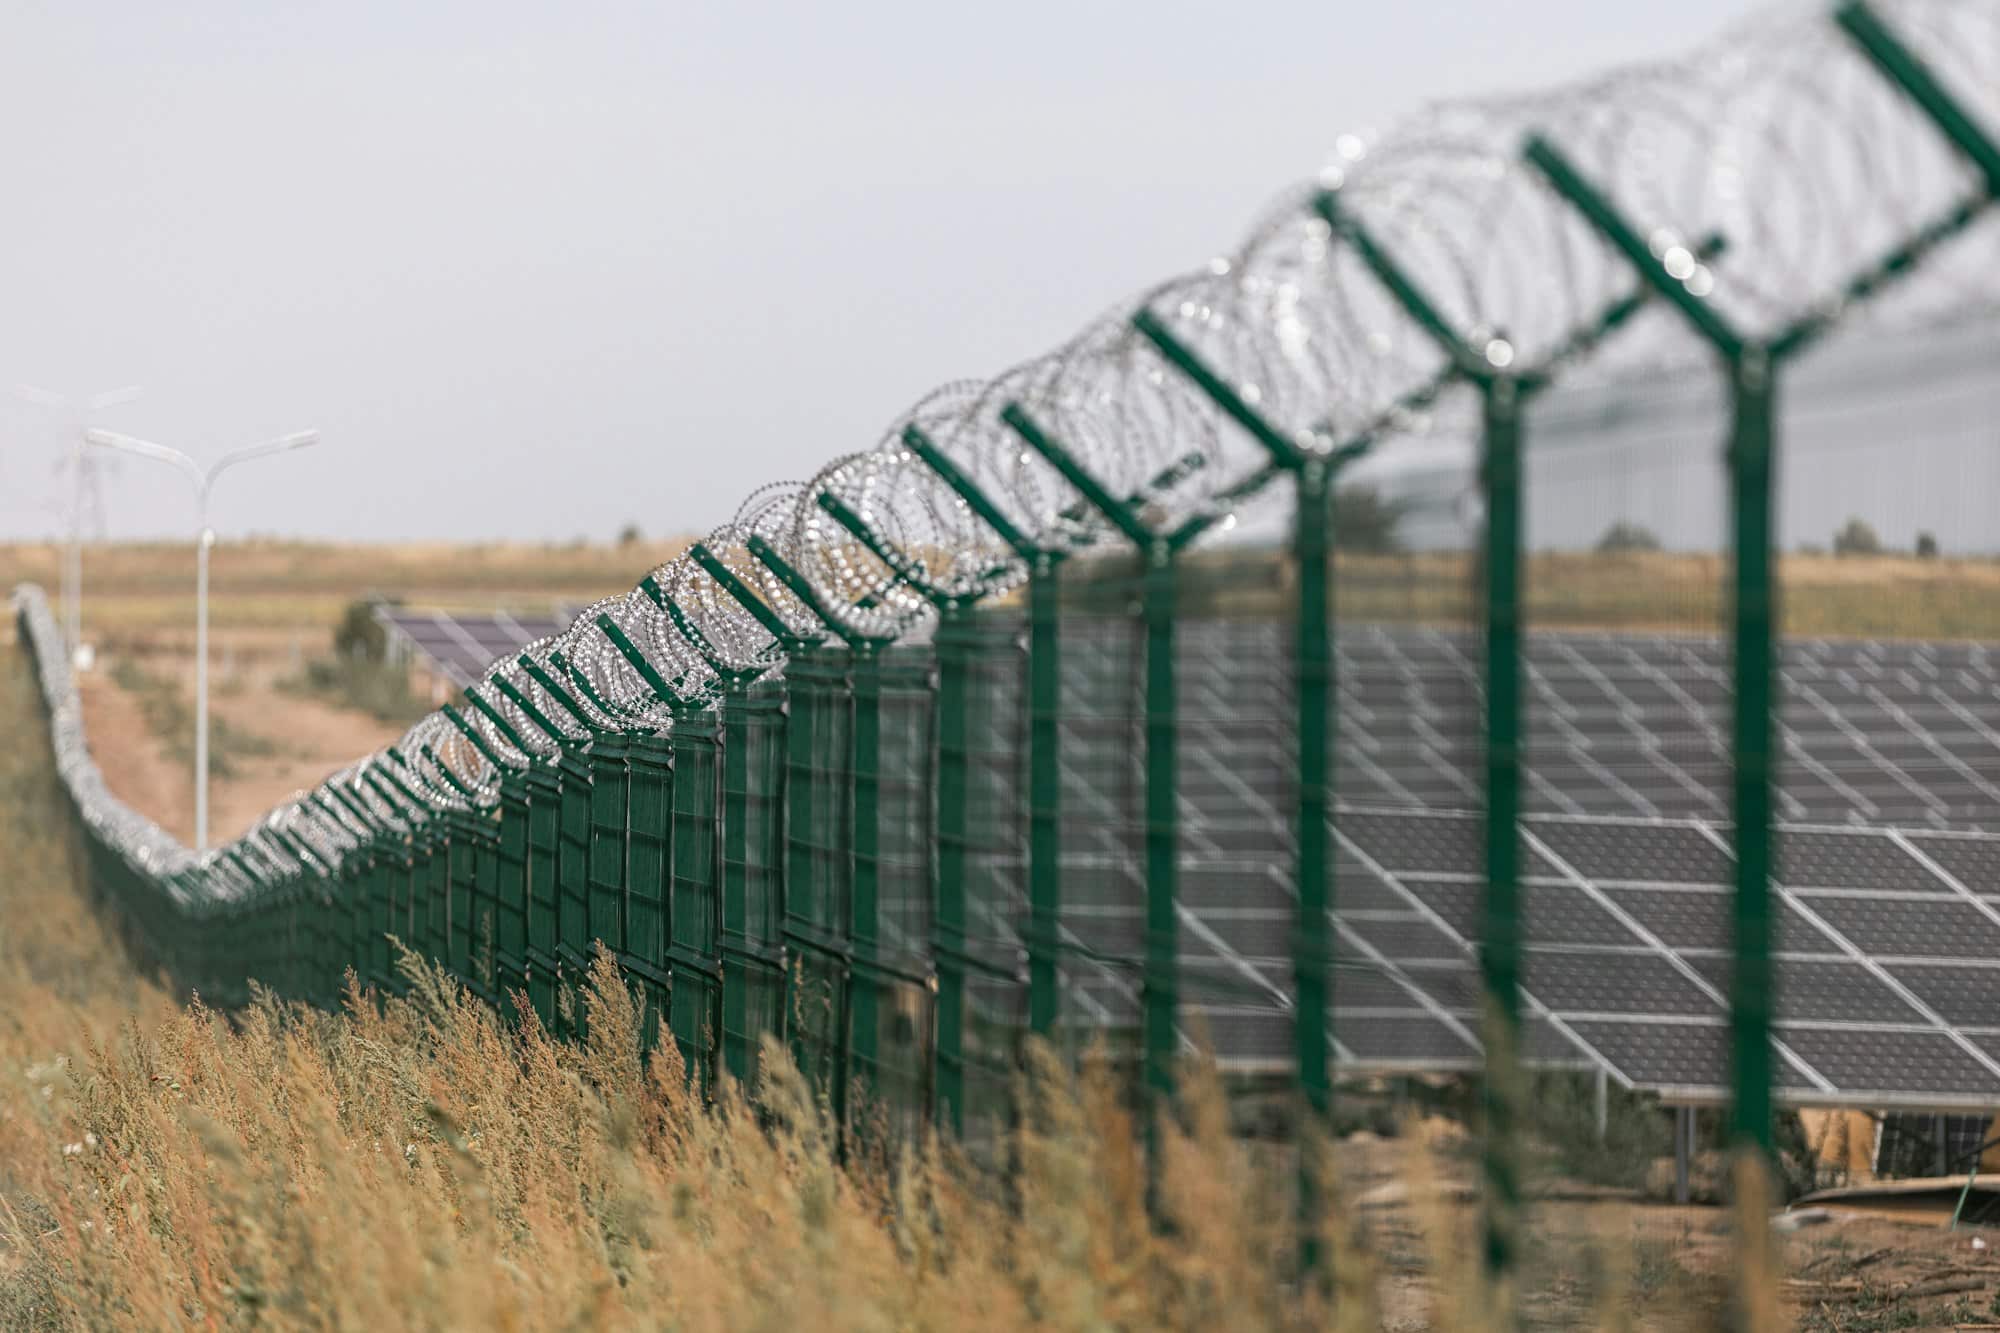 Солнечная электростанция защищена от дороги забором из колючей проволоки. Ограждение чувствительных объектов с помощью